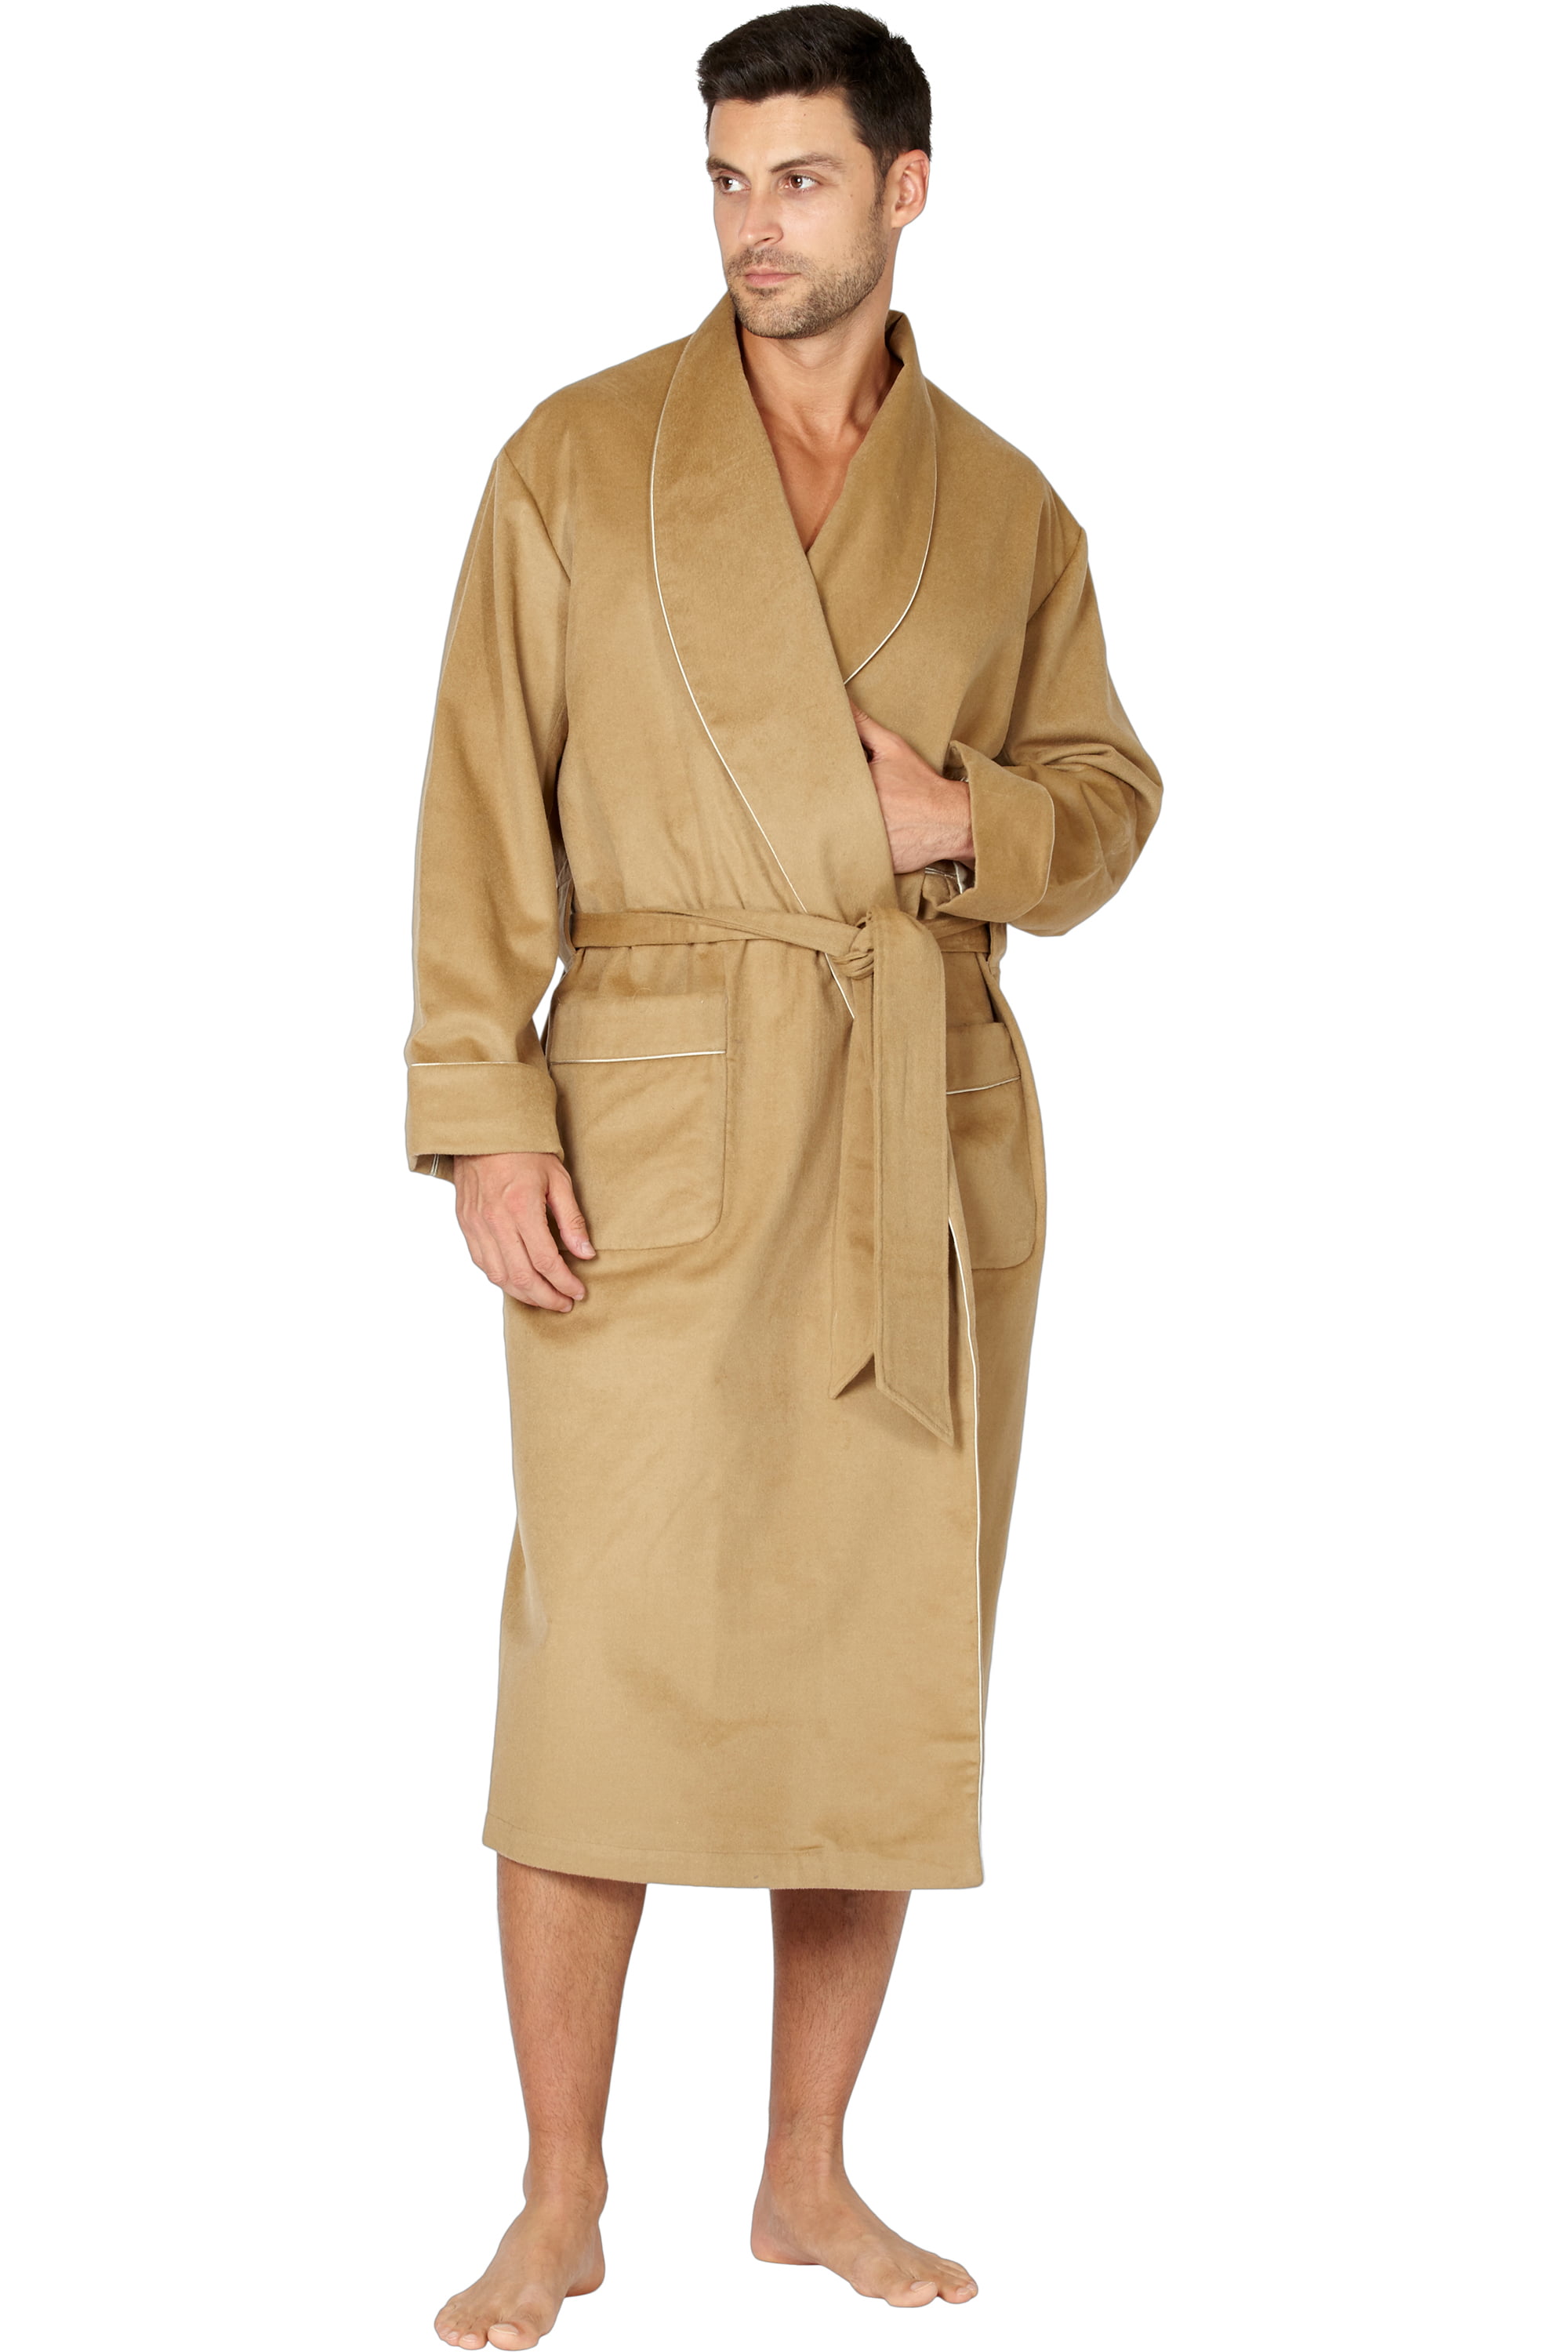 Men's Brown Wool Dressing Gown Robe Housecoat